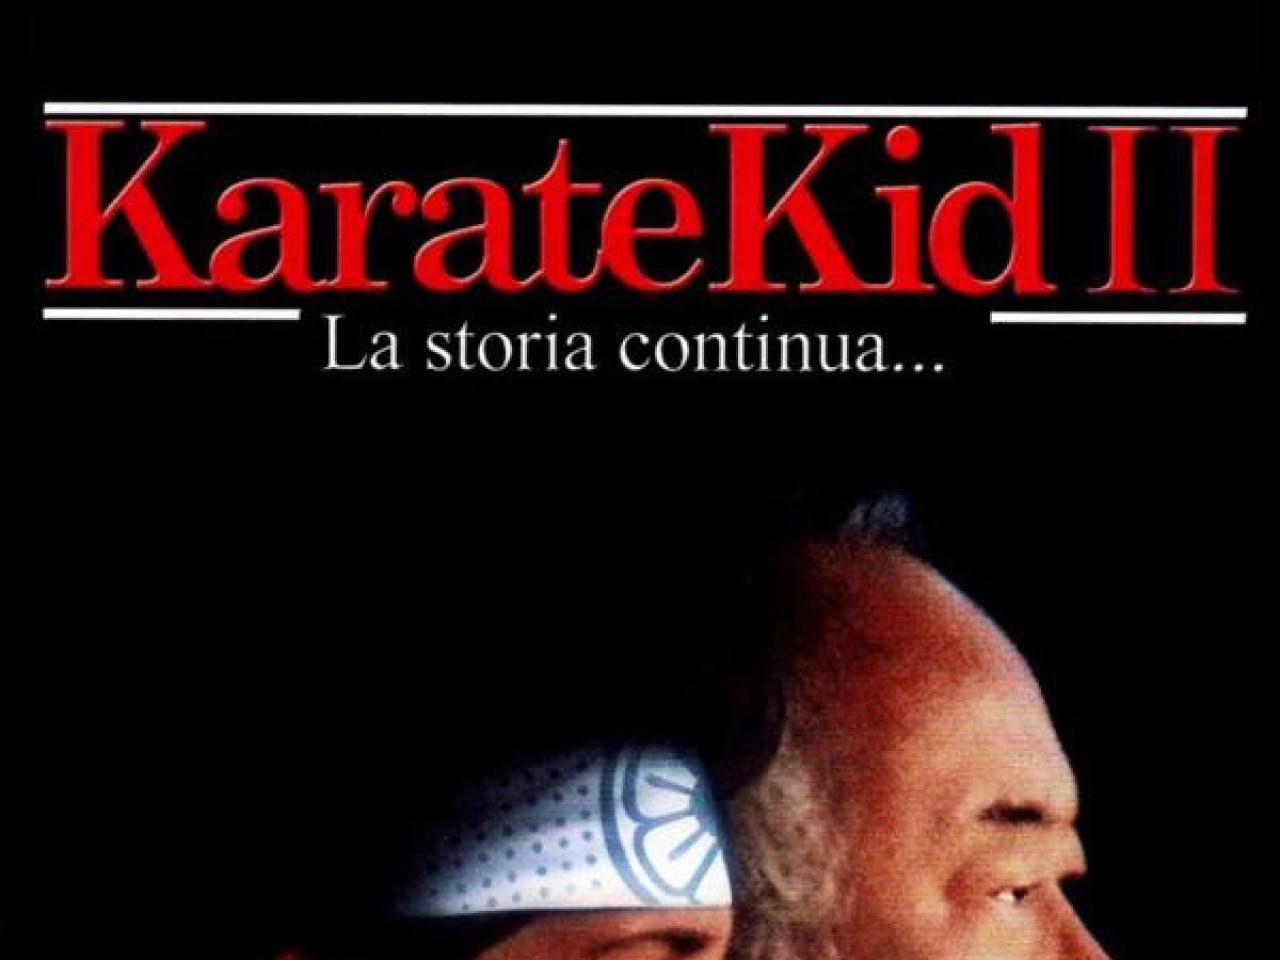 Karate Kid II - La Storia Continua